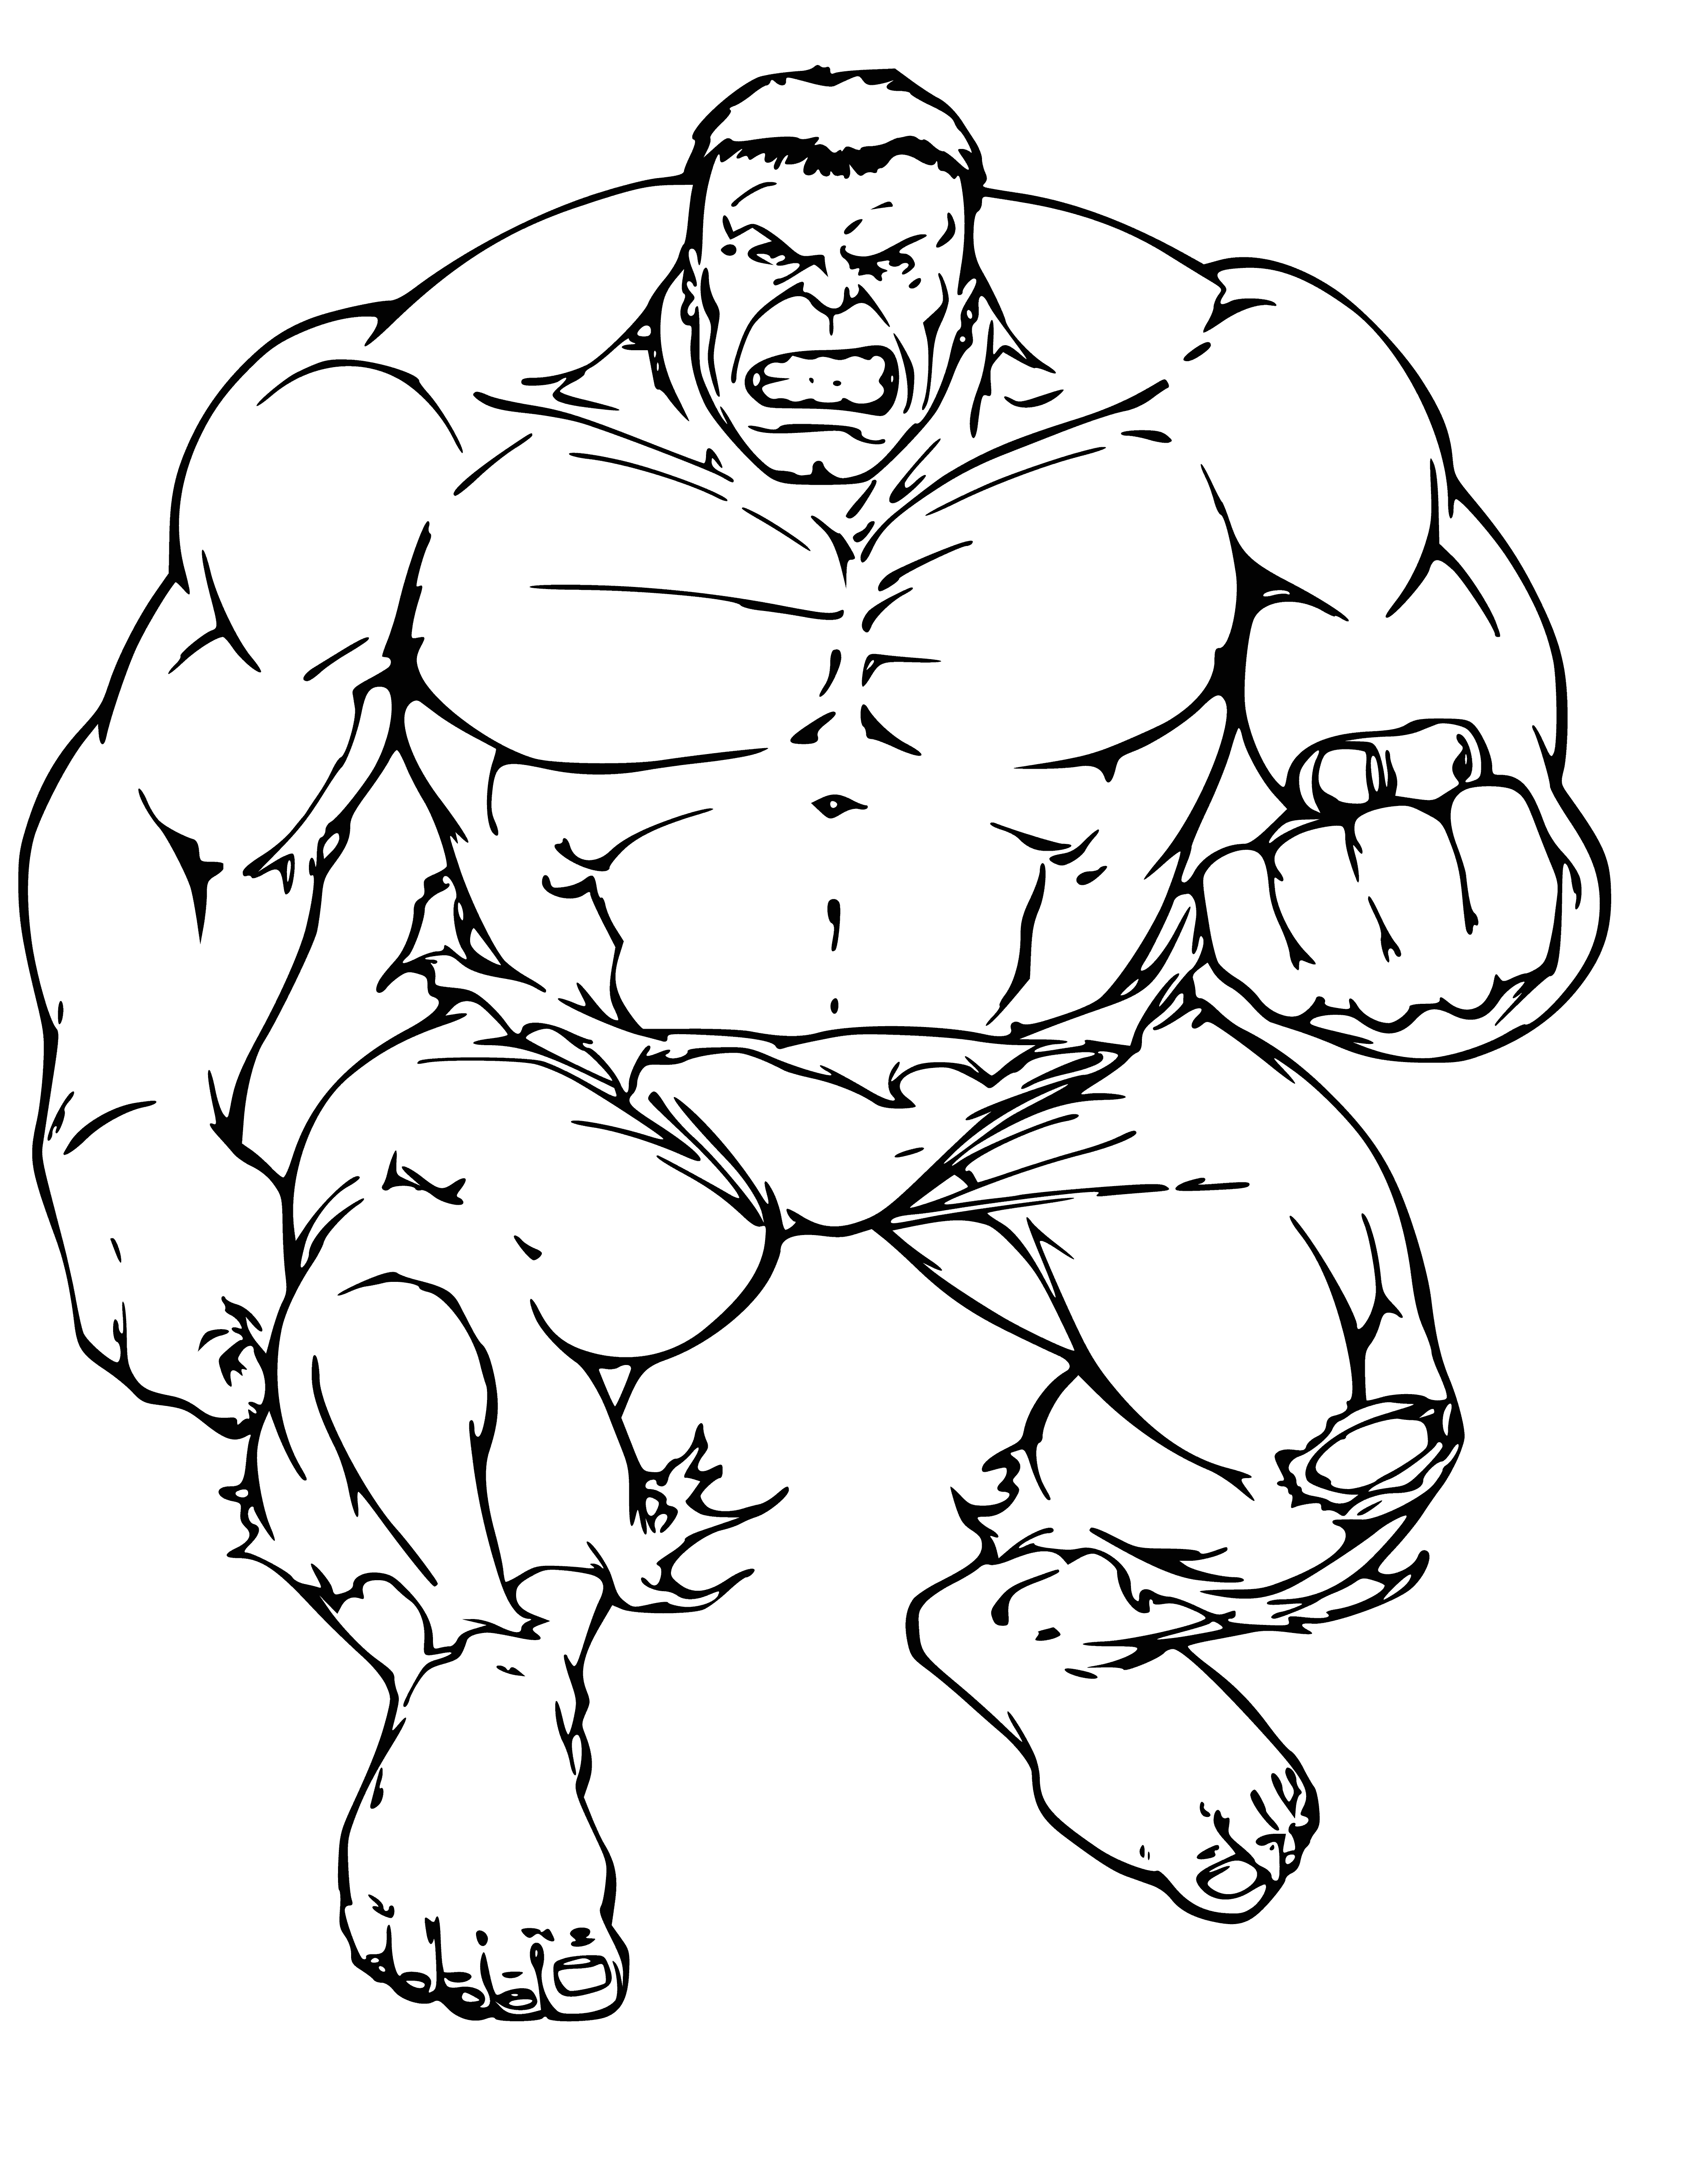 Hulk raskraska